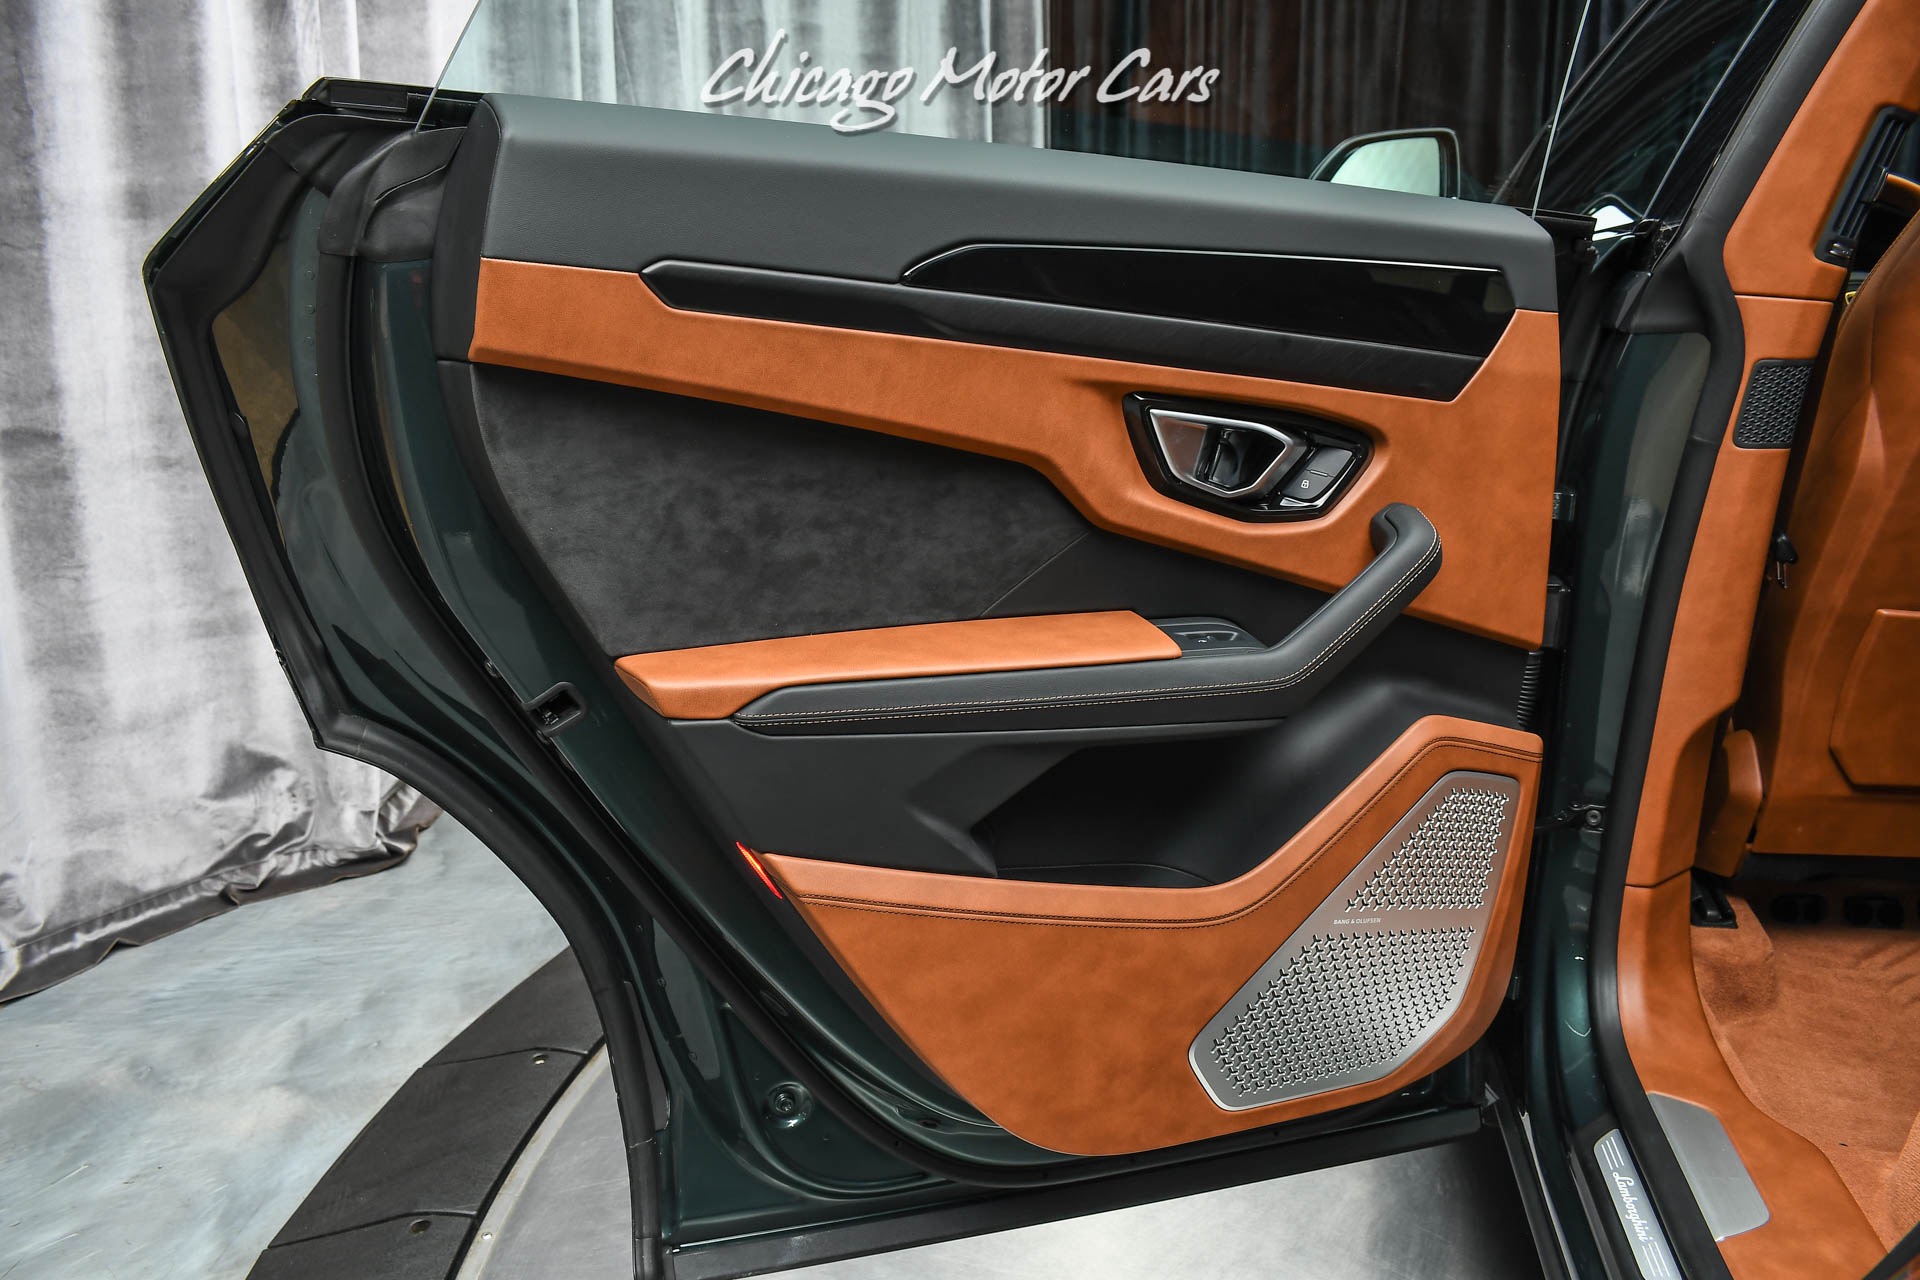 Used-2021-Lamborghini-Urus-SUV-Rare-Color-Combo-Terra-Asia-Interior-ONLY-300-Miles